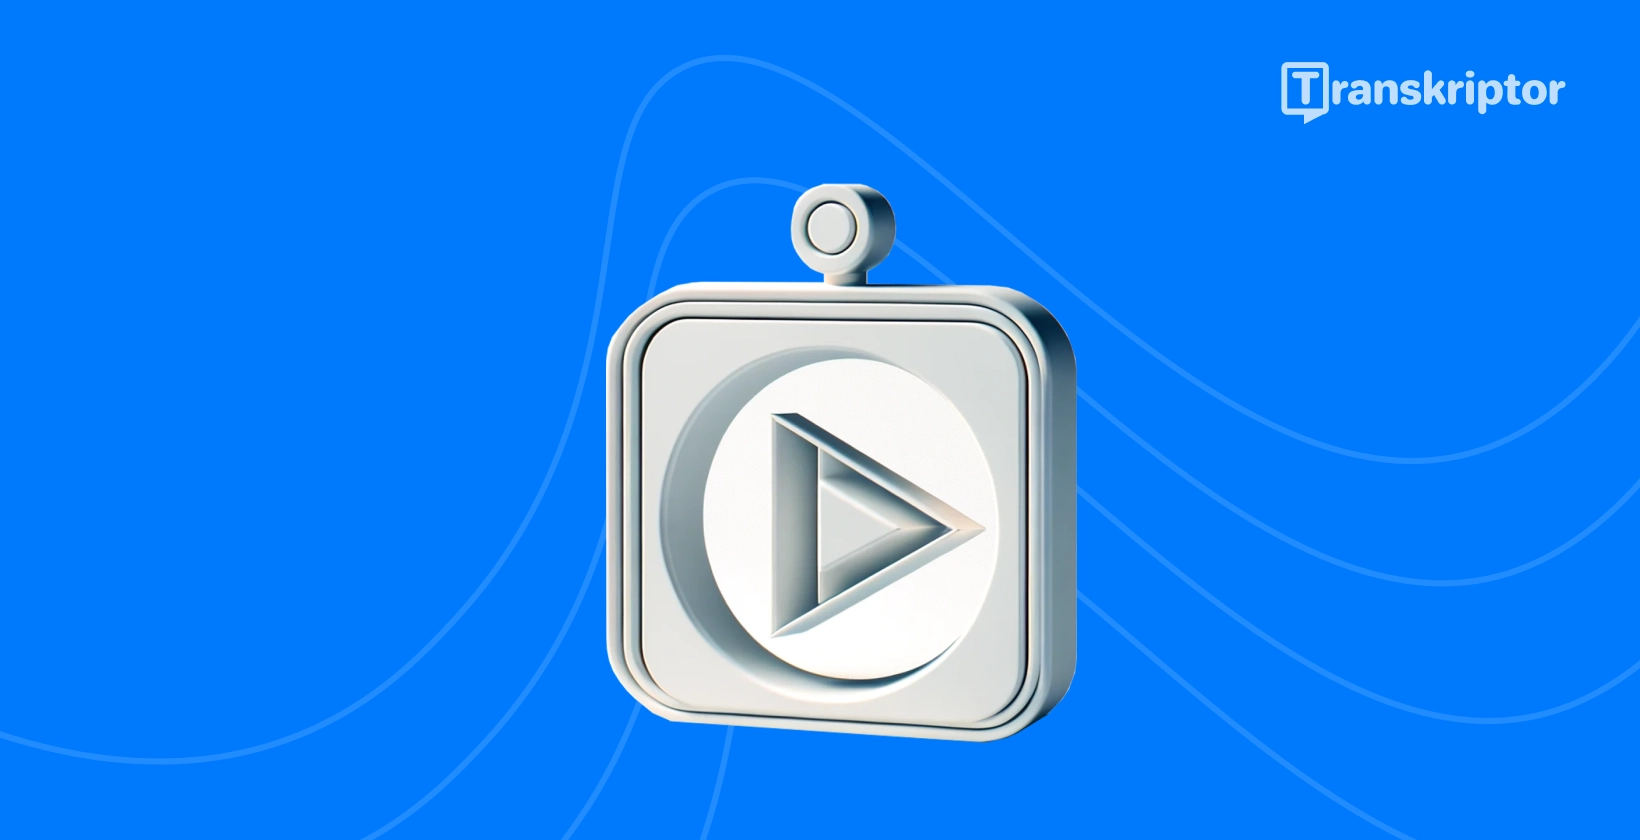 YouTube gráfico do guia de transcrição, com um ícone de botão de reprodução para representar o conteúdo do vídeo.